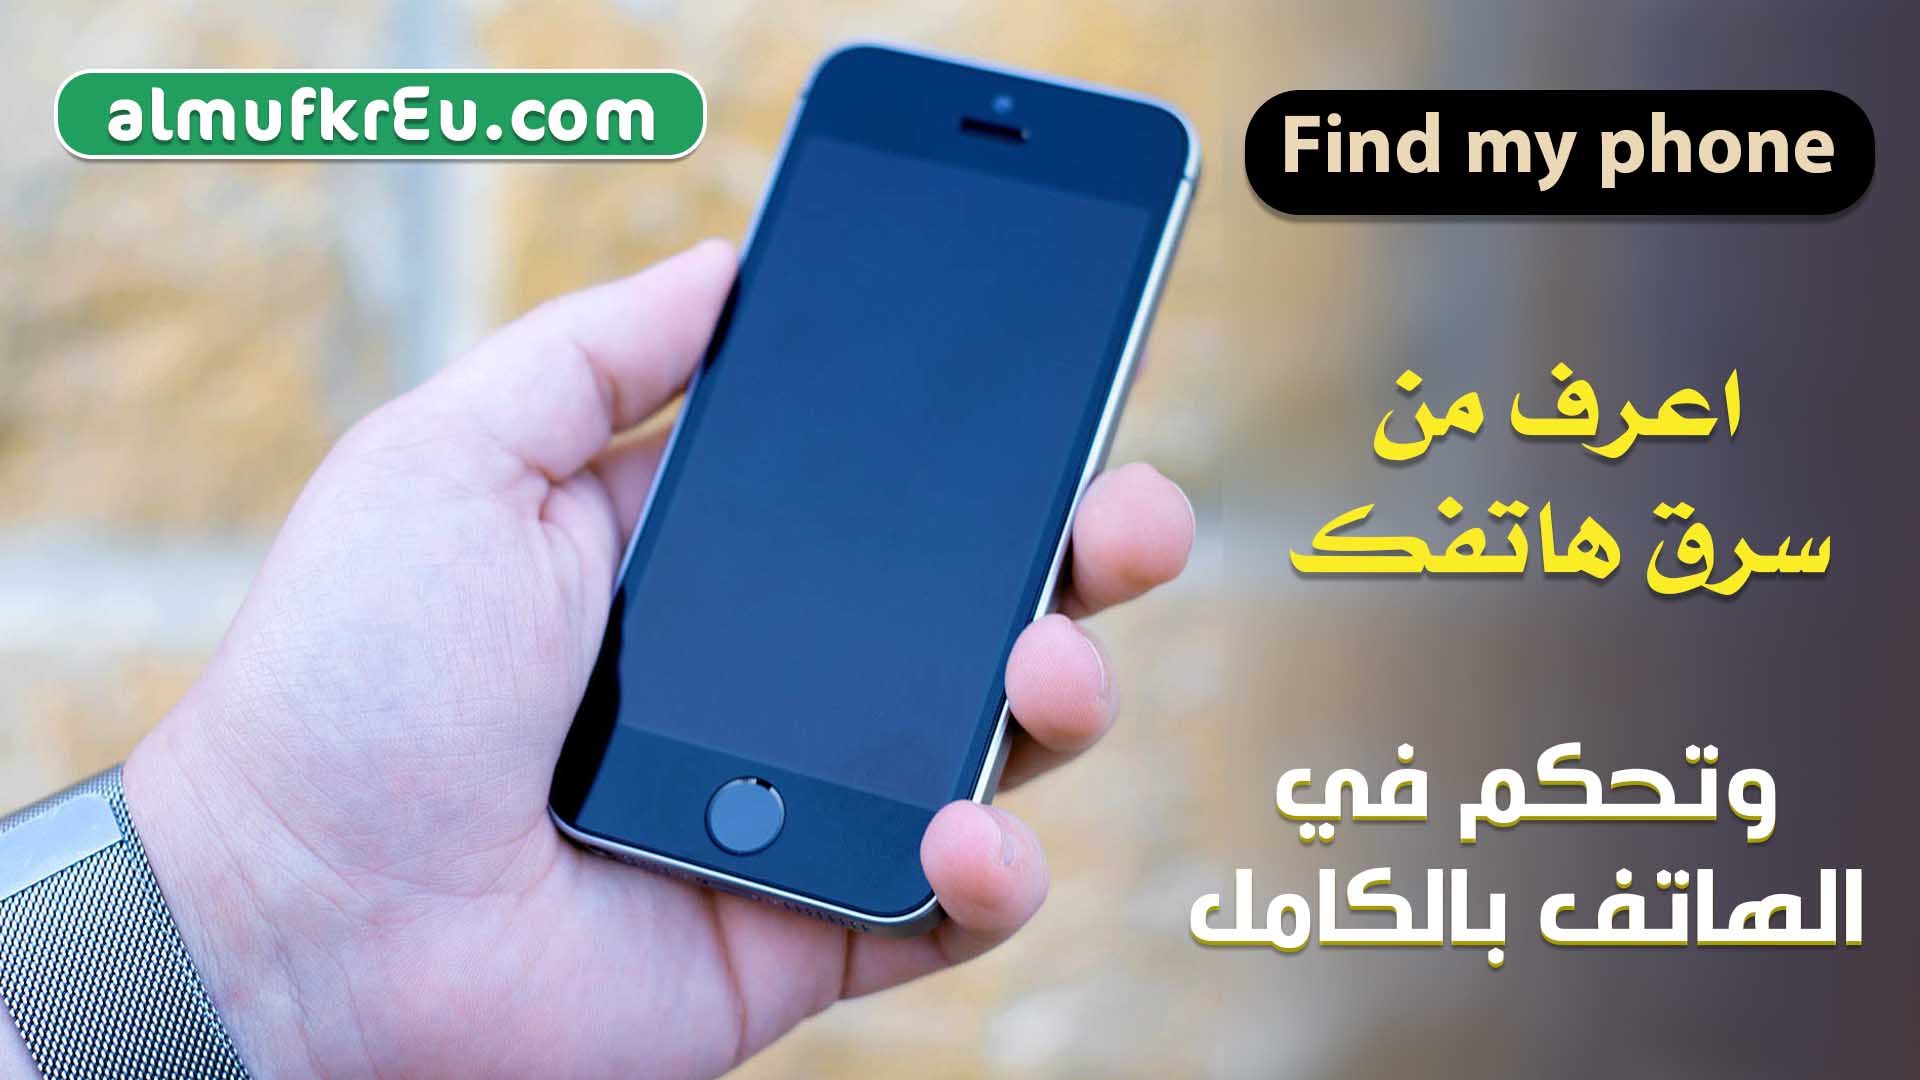 كيفية ايجاد أو تحديد مكان جهاز الهاتف في حال فقدانه أو محو البيانات عن الجهاز المفقود - find my phone android